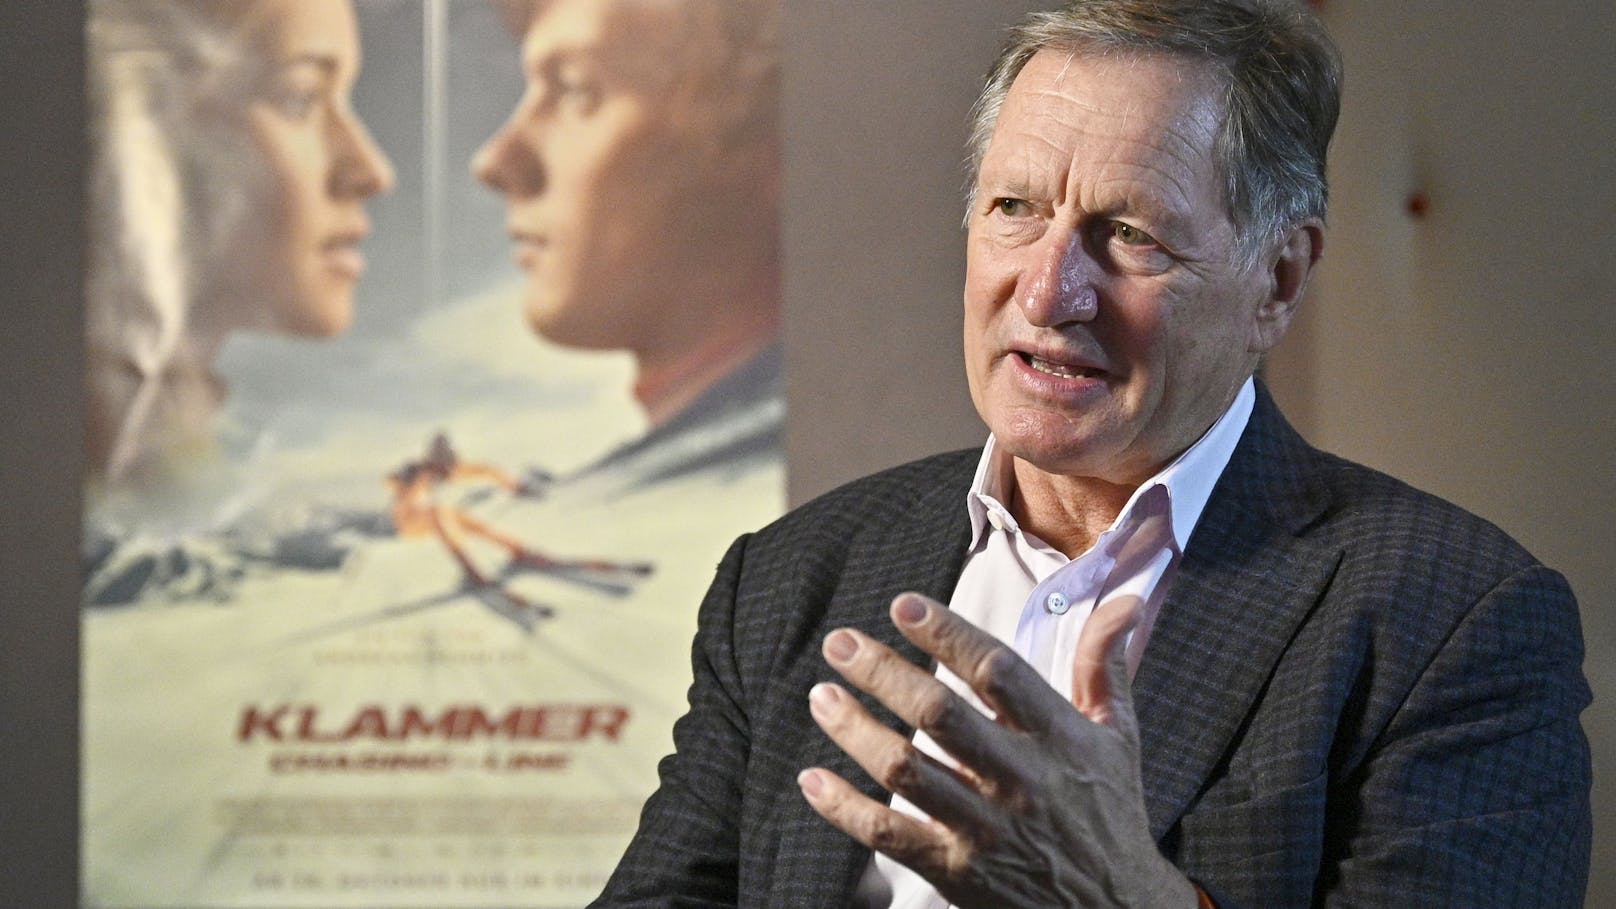 Franz Klammer spricht im Interview über sein legendäres Rennen, den neuen Film und den Skizirkus der 70er Jahre.